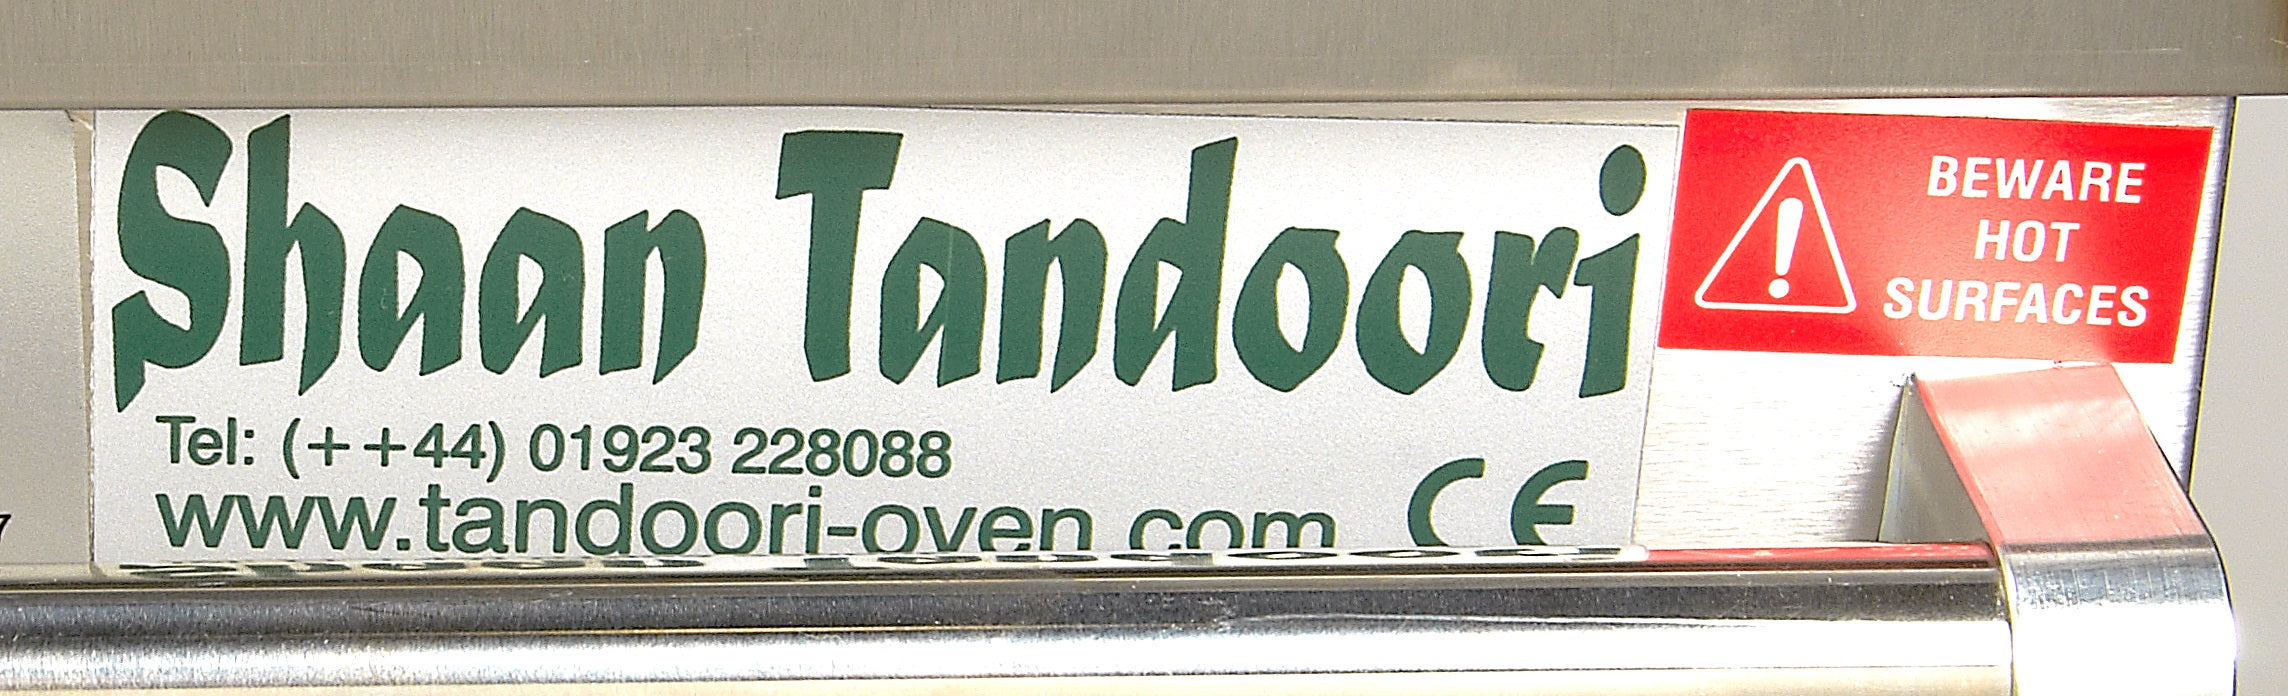 Shaan Clay Tandoor Oven